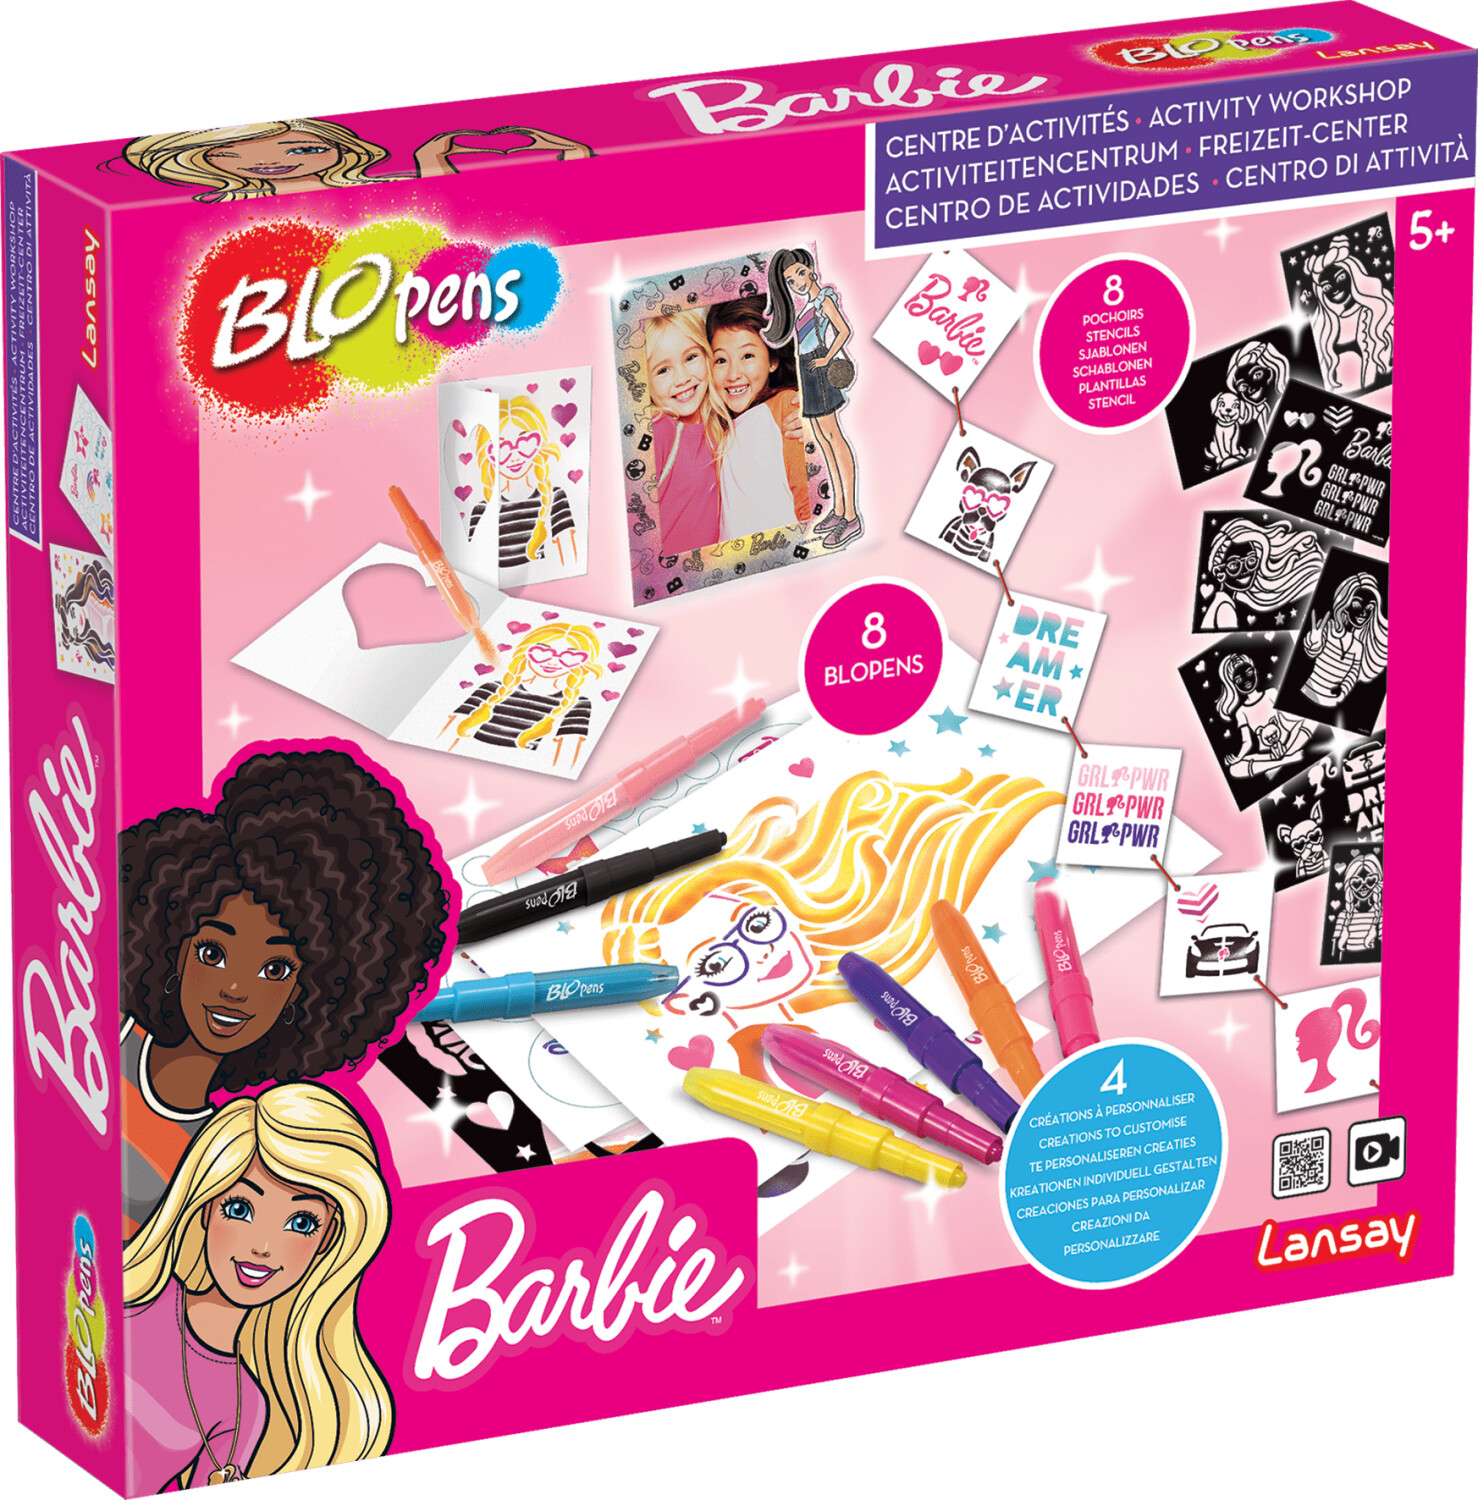 Lansay Blopens Super centre d'activités Barbie au meilleur prix